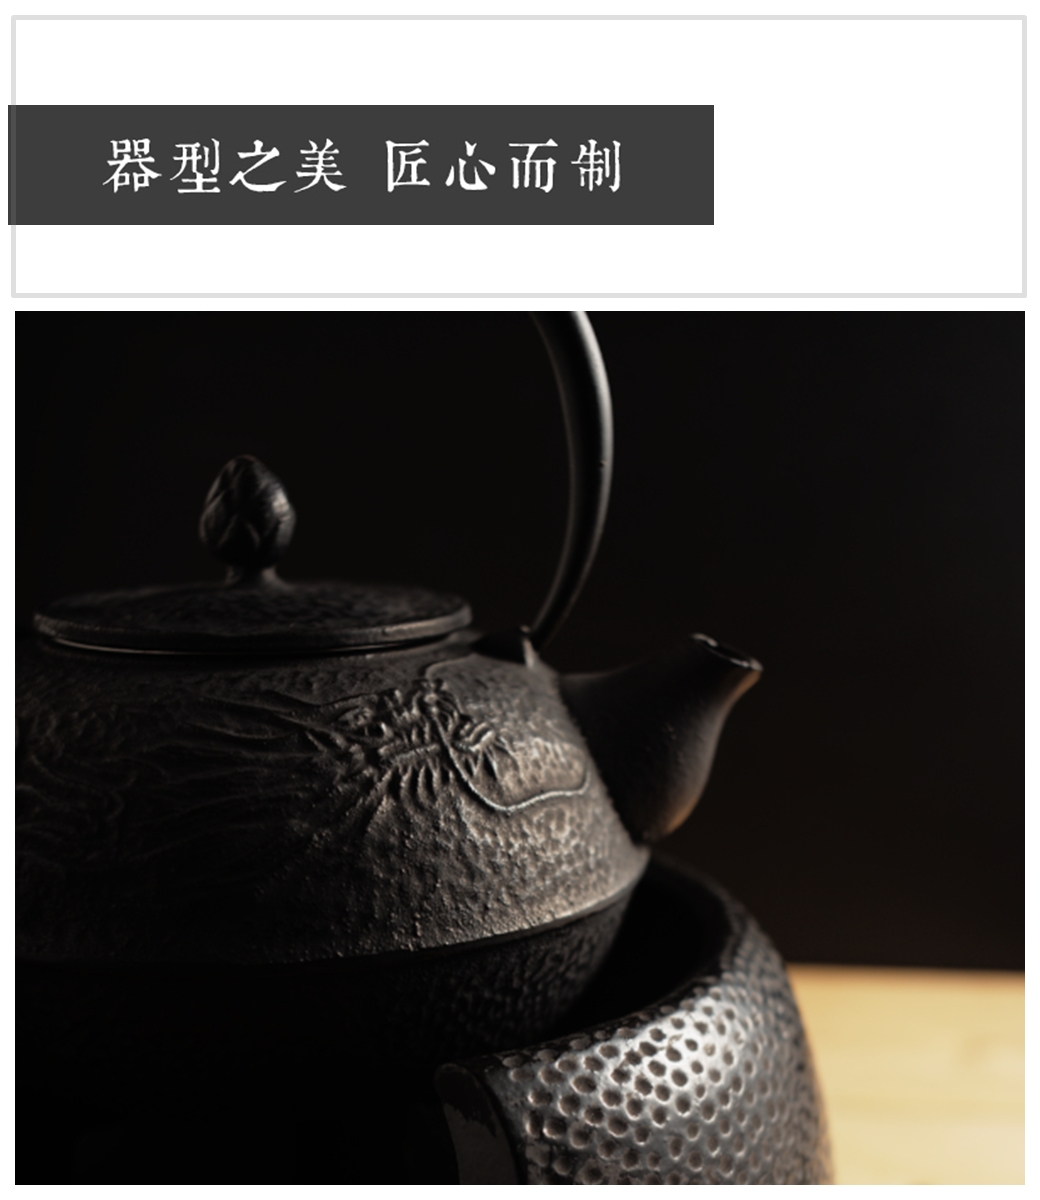 กาน้ำชาเหล็กสไตล์ญี่ปุ่น ความจุ 1.2 ลิตร (สีดำ)